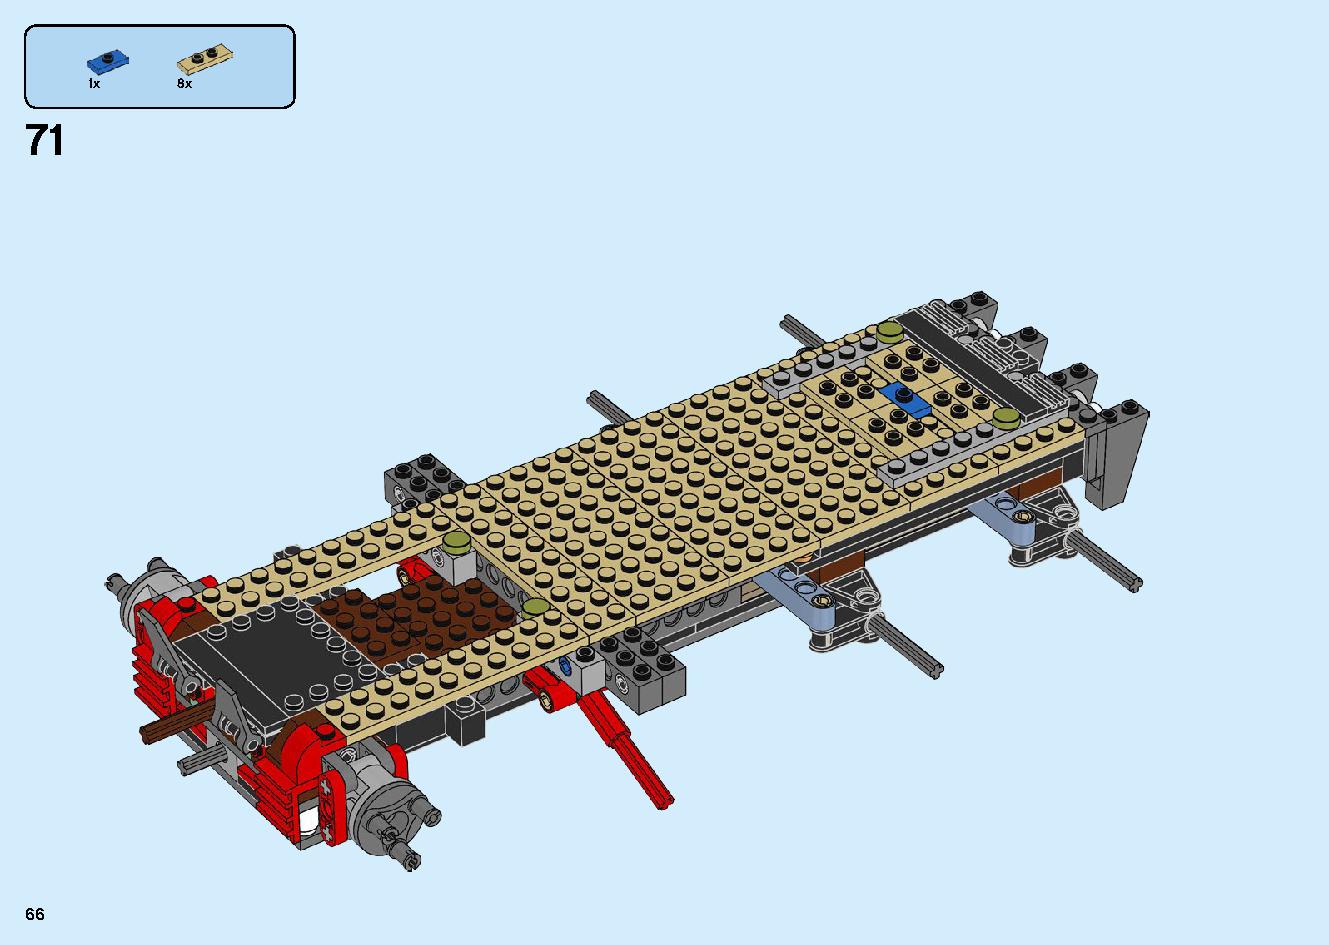 陸上戦艦バウンティ号 70677 レゴの商品情報 レゴの説明書・組立方法 66 page